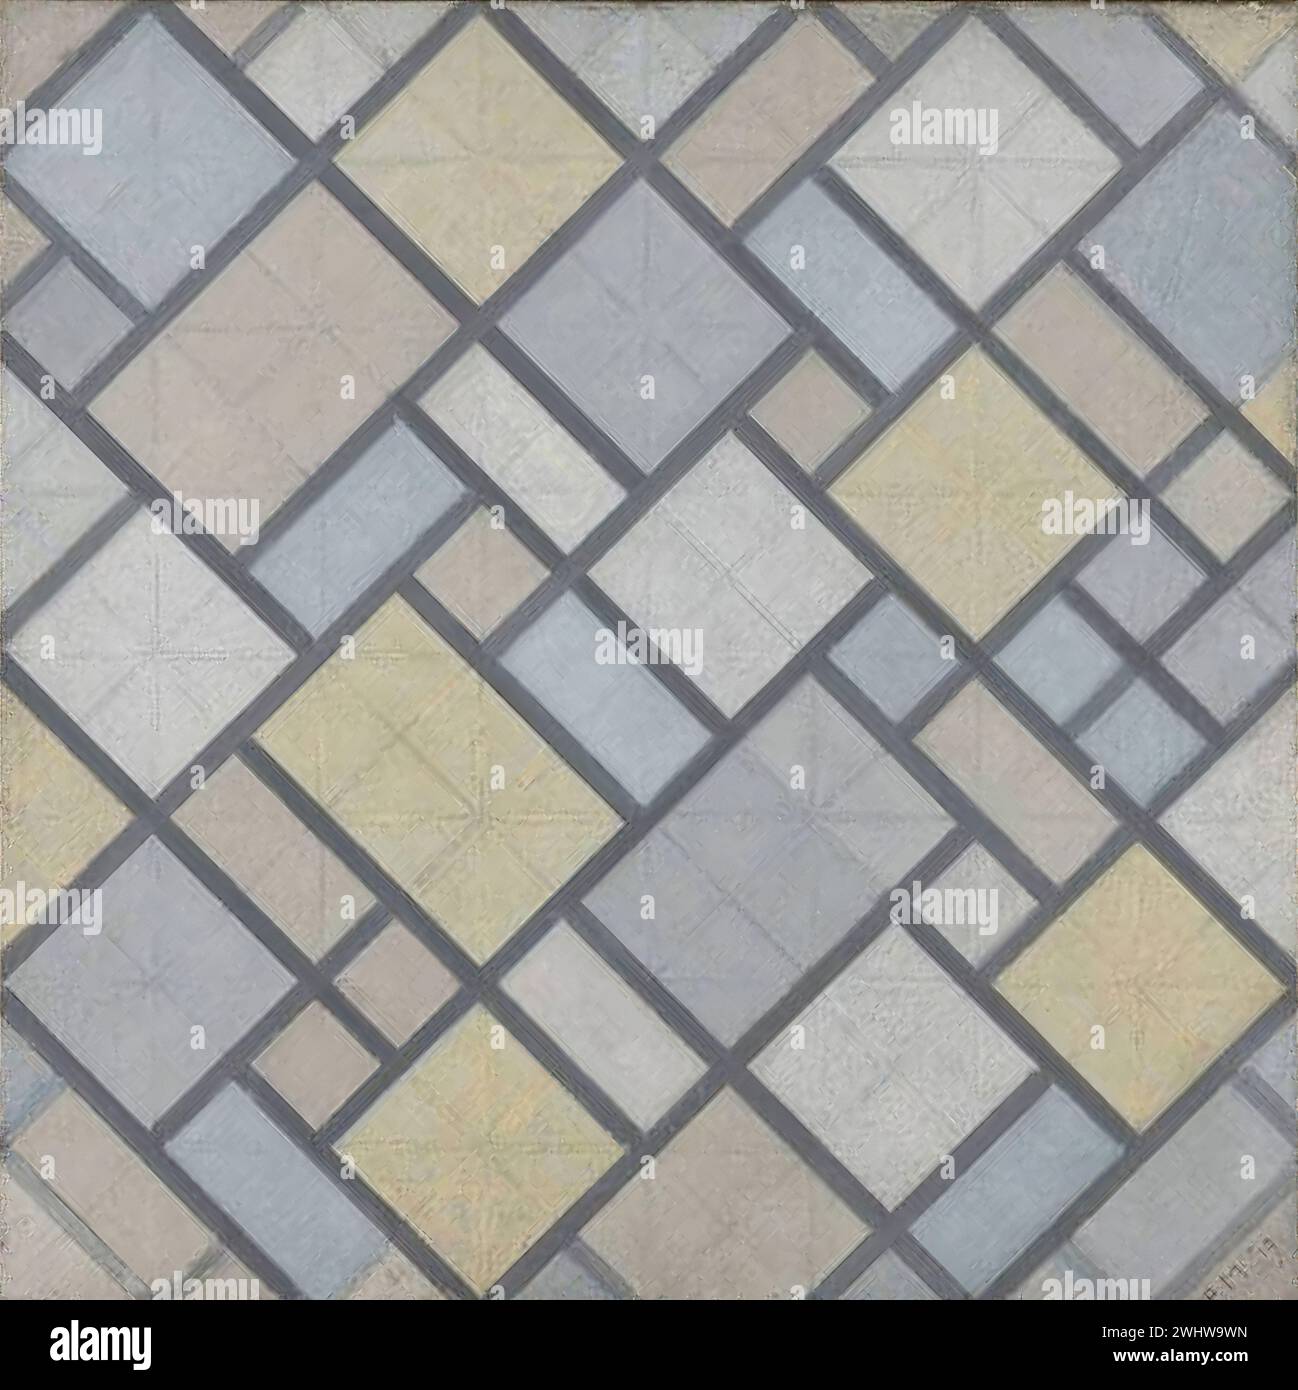 Piet Mondrian - Composition avec grille 5, losange et couleurs Stock Photo